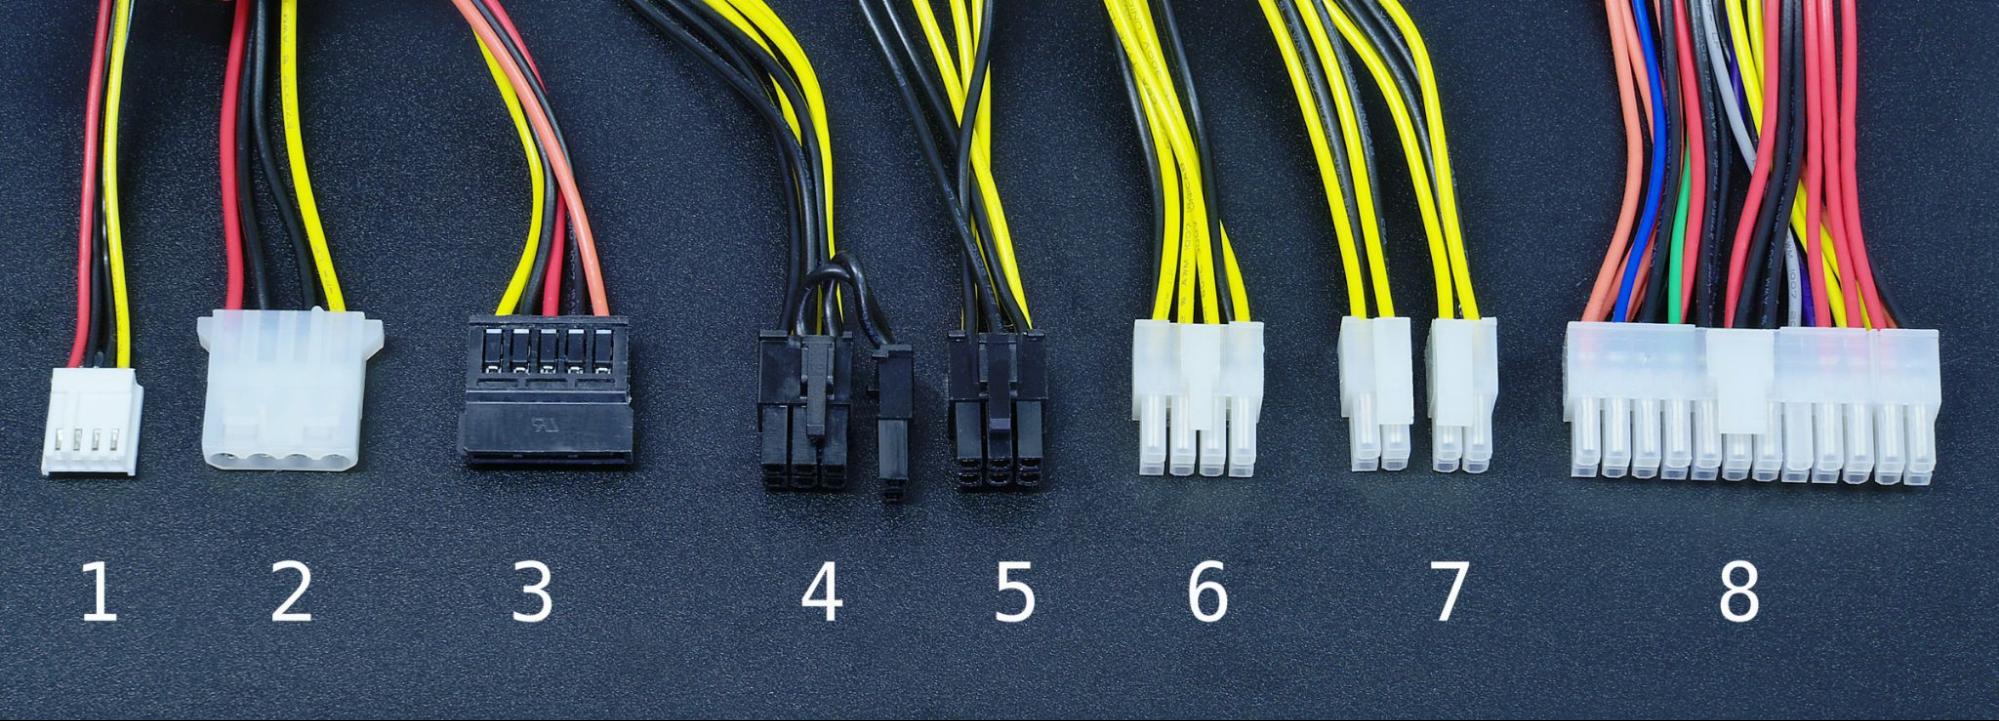 PC Power Connectors